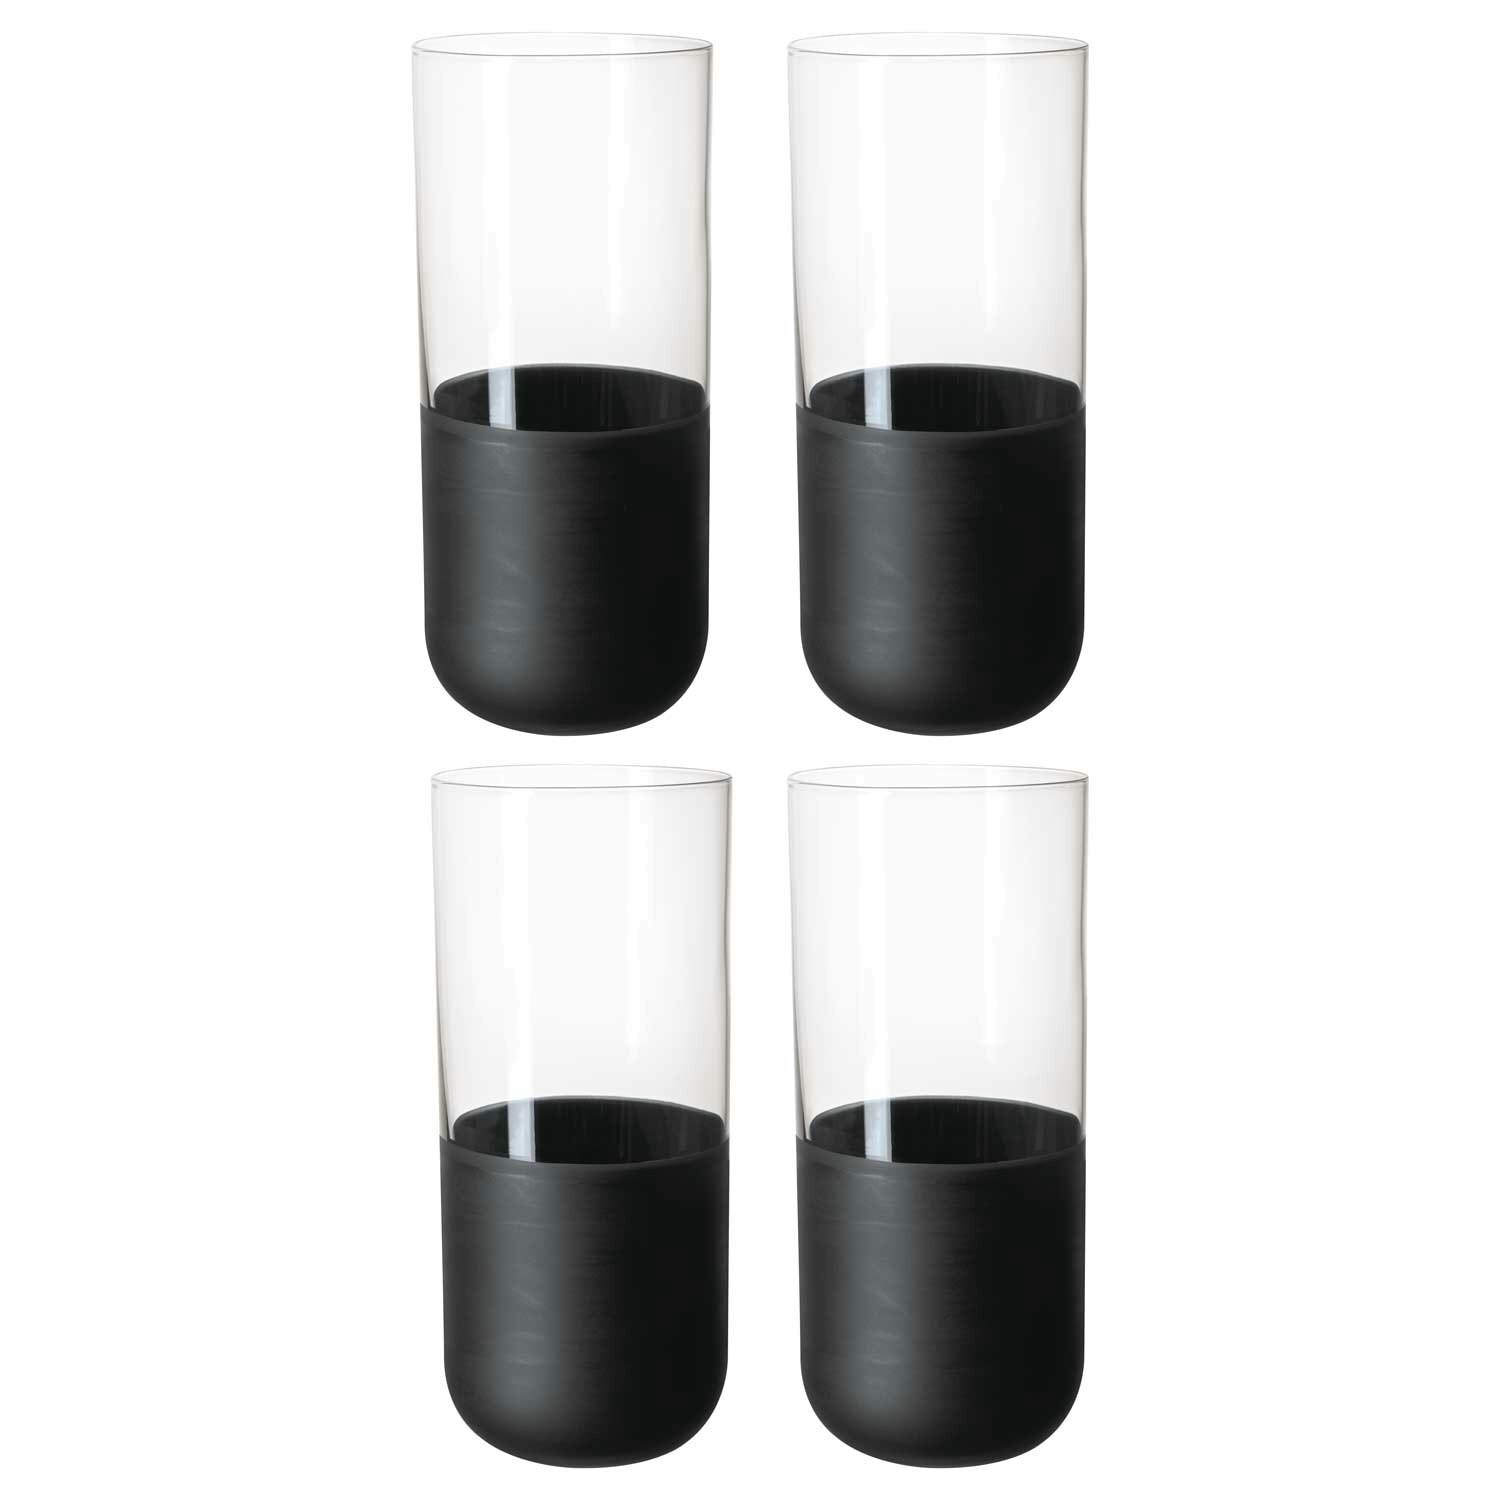 https://royaldesign.com/image/2/villeroy-boch-manufacture-rock-longdrink-glass-30-cl-4-pack-0